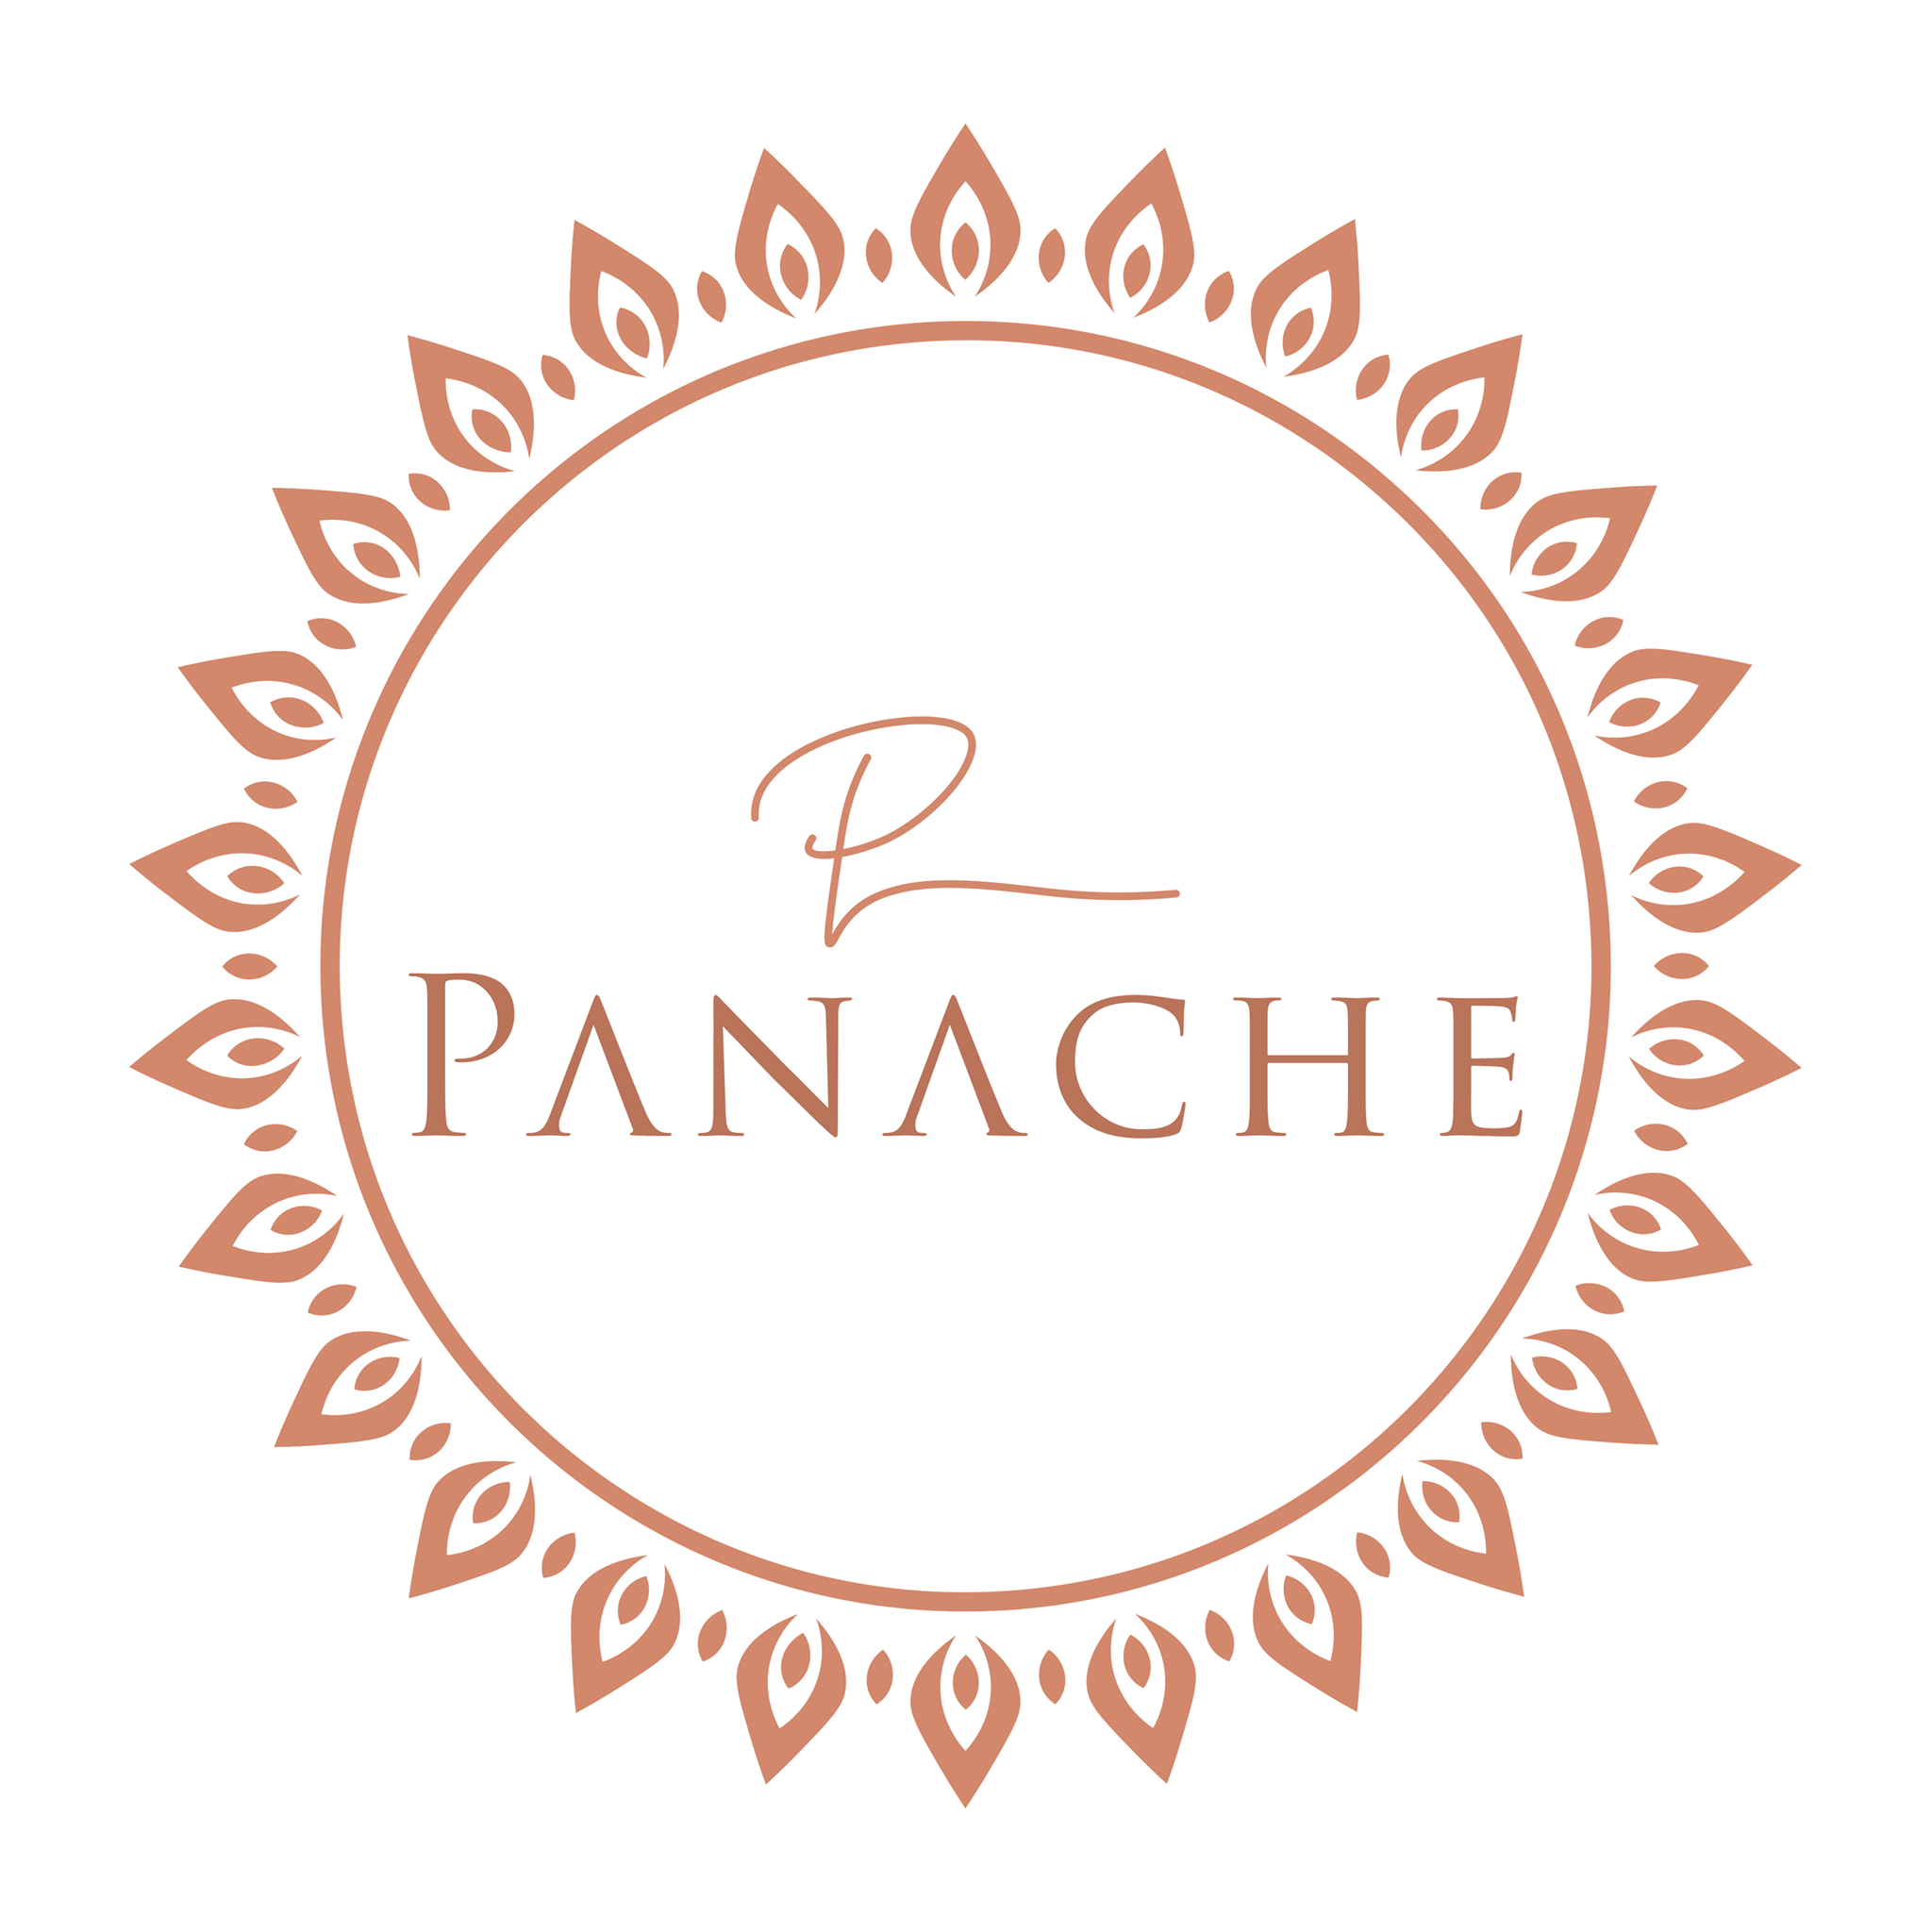 Panache Fine Indian Restaurant